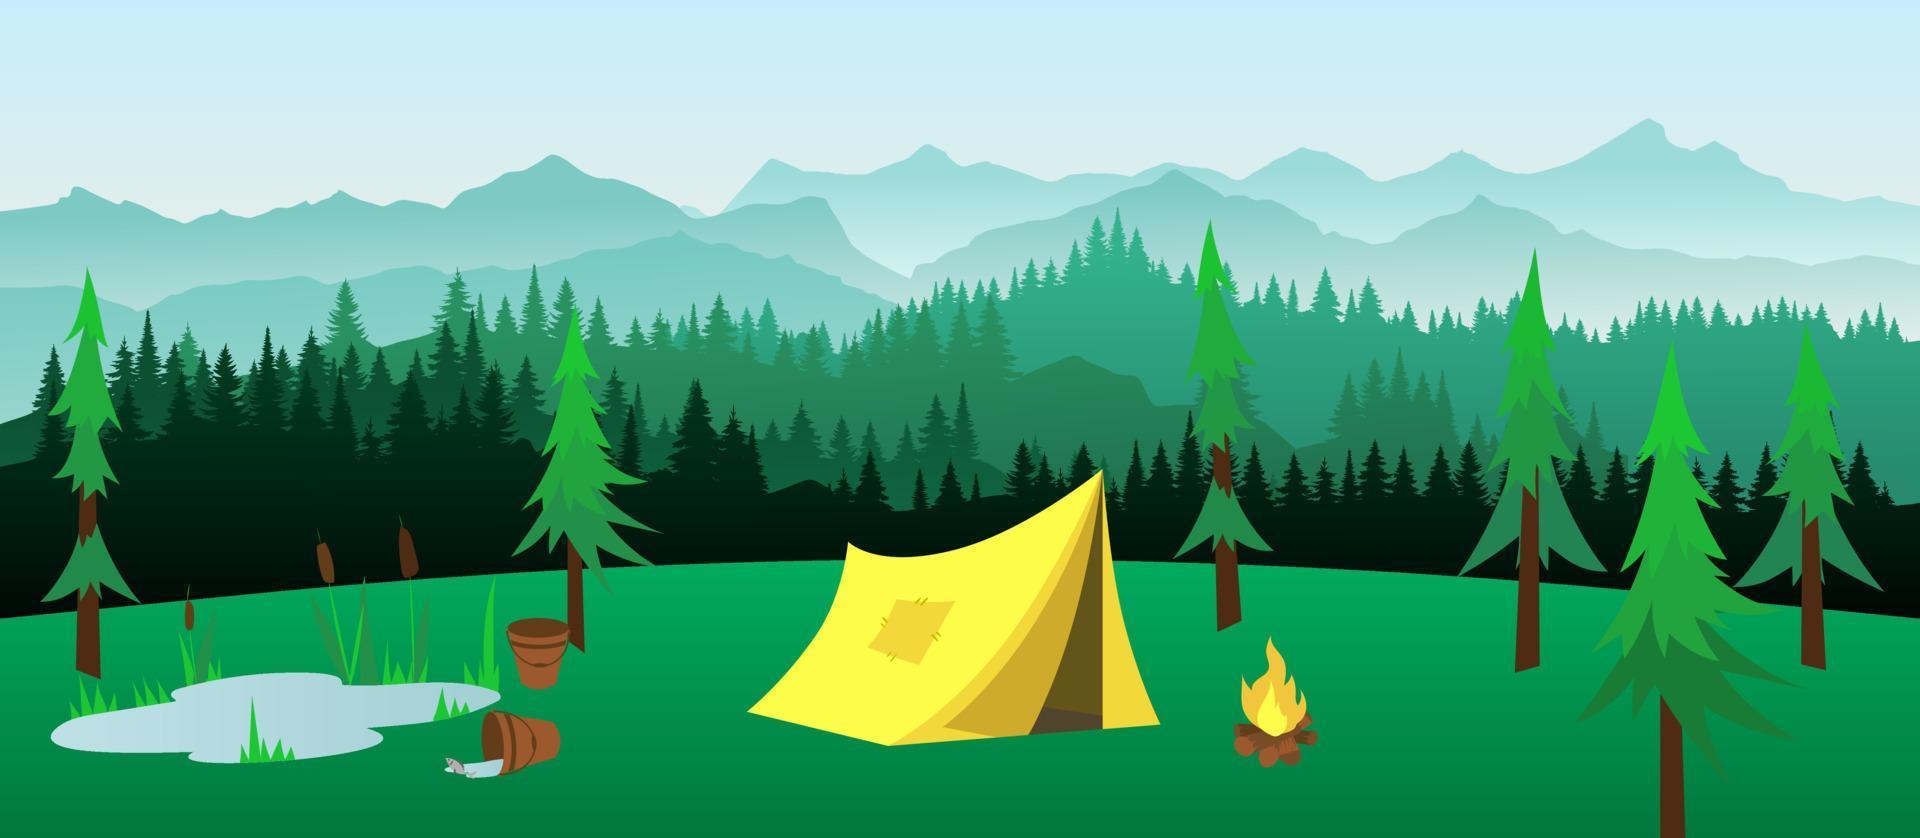 vektor berg skog bakgrundsstruktur, siluett av barrskog. tält med brasa vandring koncept turism camping med vild natur. säsongsträd, gran, gran. horisontellt landskap.